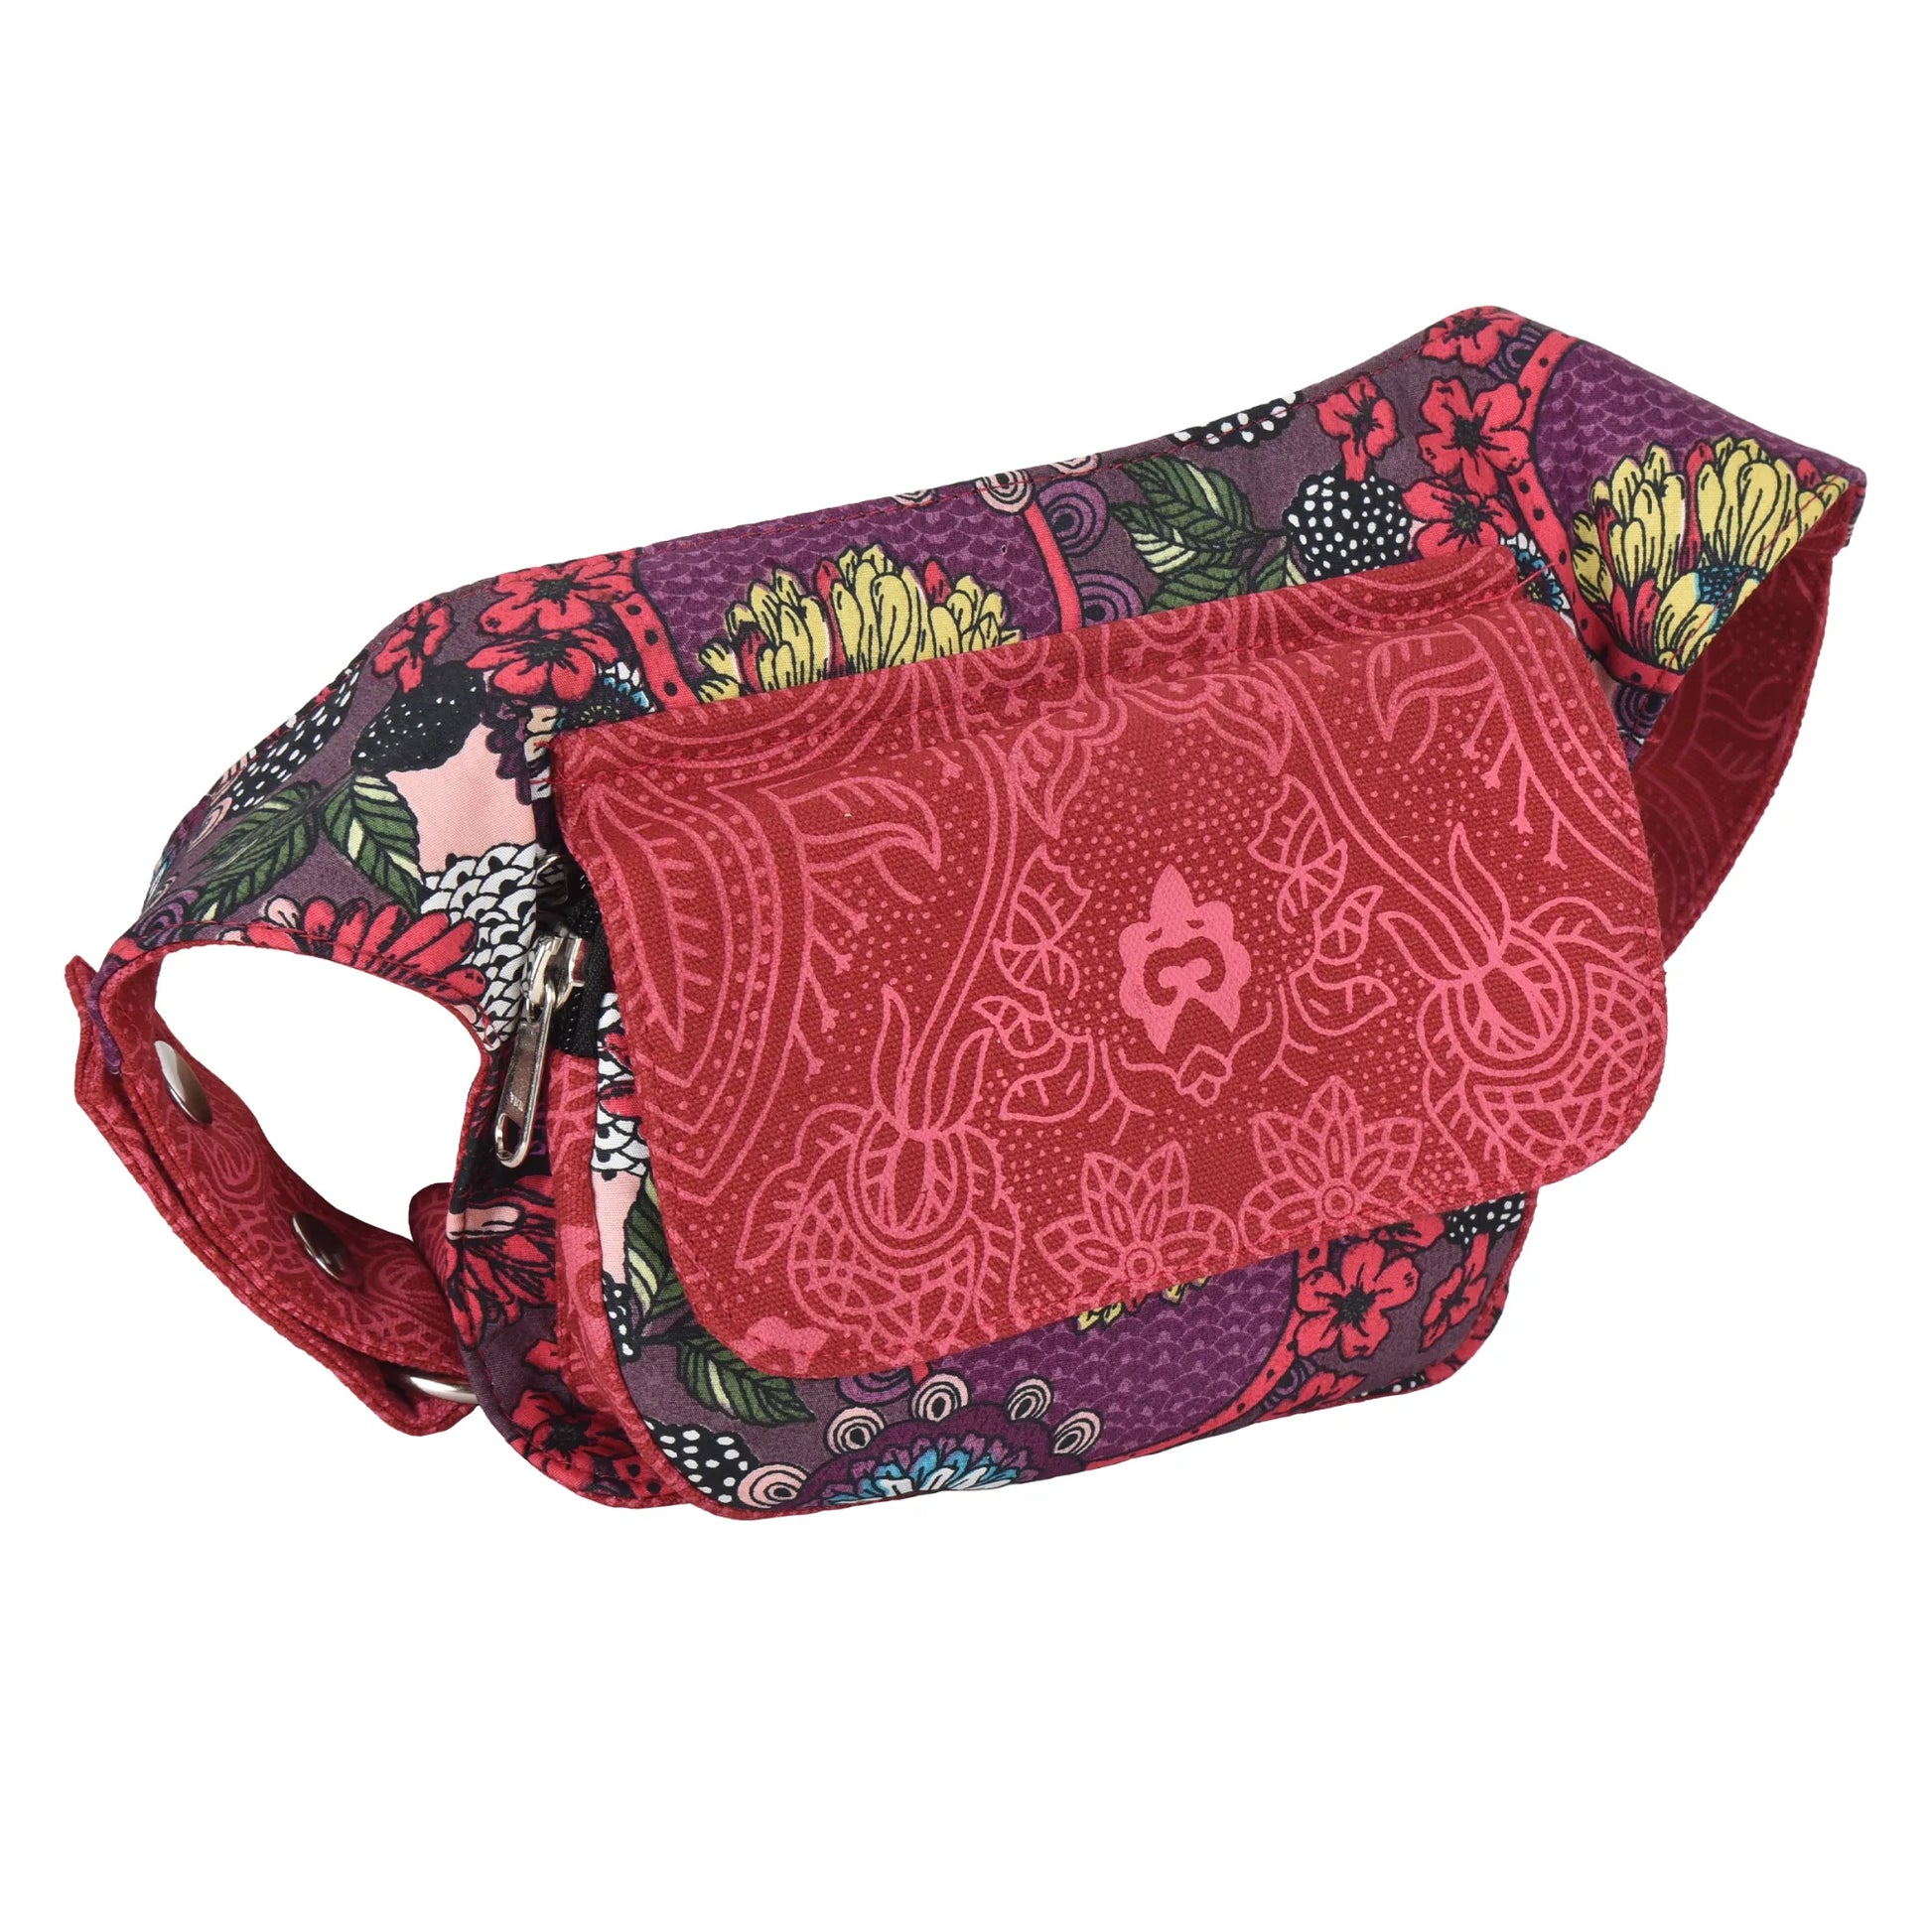 Bauchtasche Hippie Tasche in Rot mit Blumenmuster 2